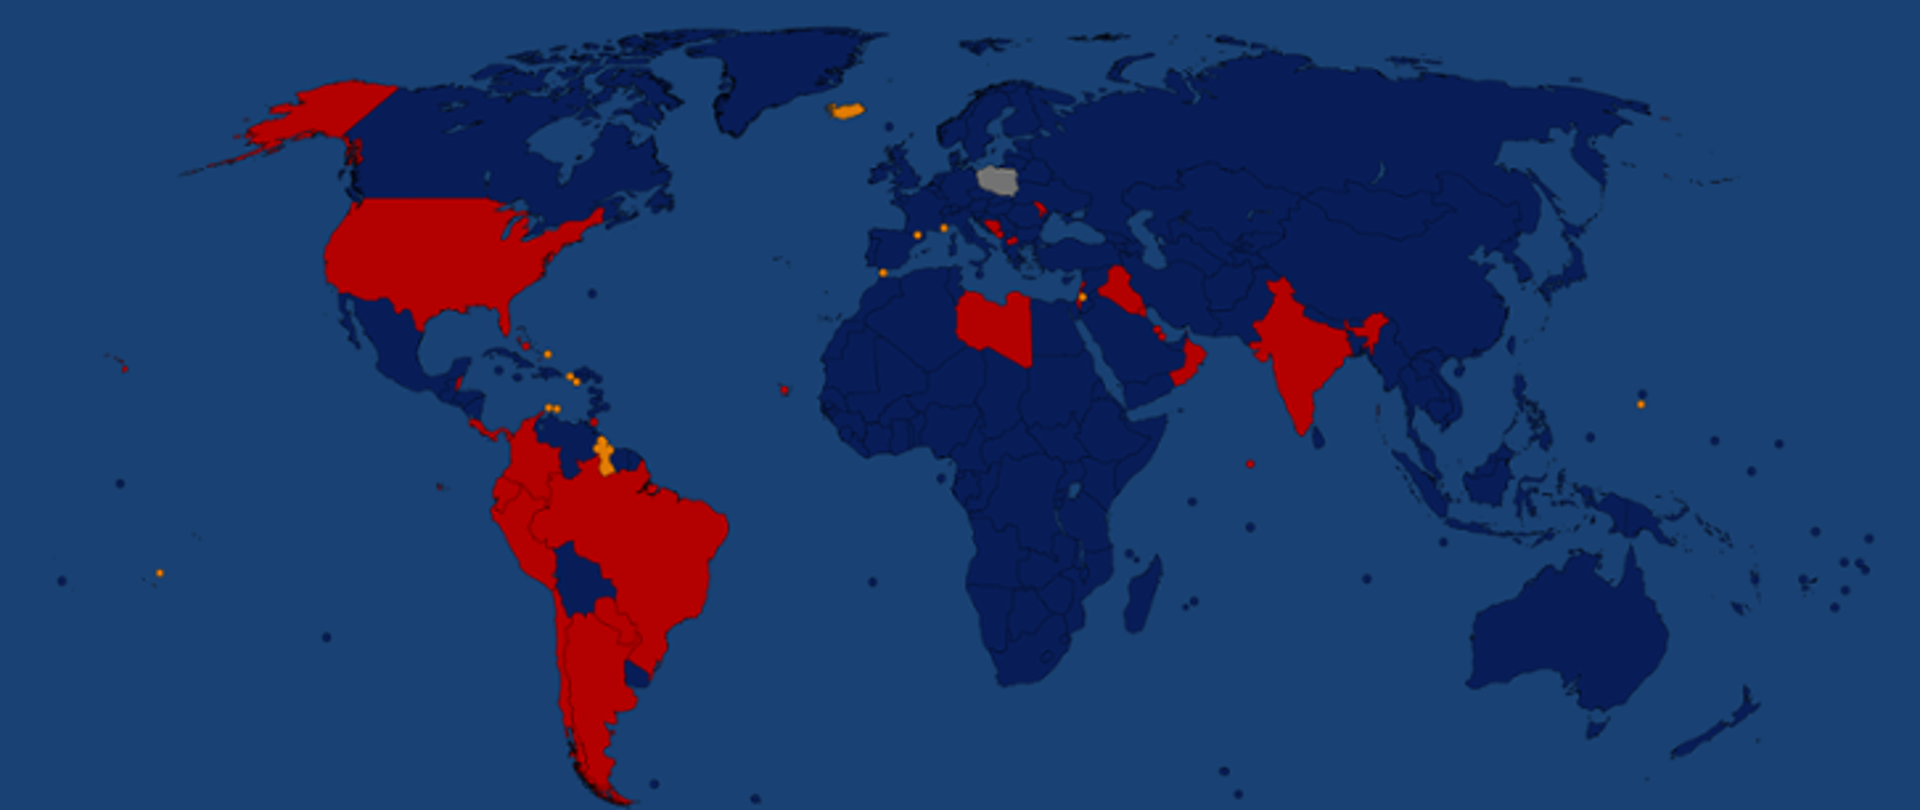 Mapa świata z zaznaczeniem krajów objętych zakazem.